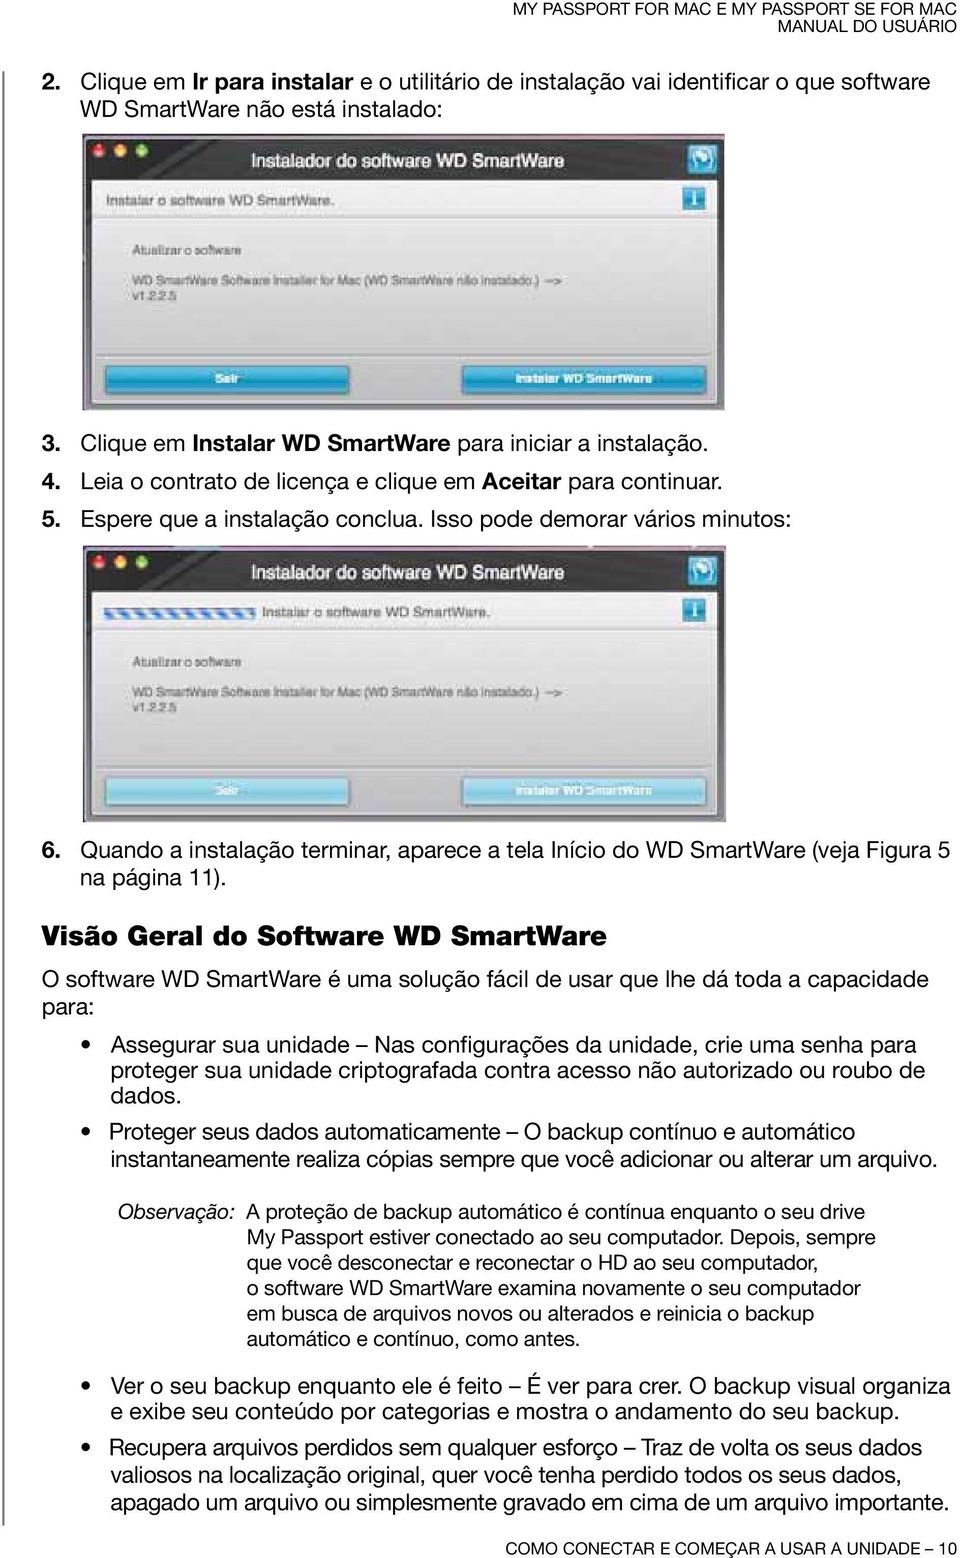 Quando a instalação terminar, aparece a tela Início do WD SmartWare (veja Figura 5 na página 11).